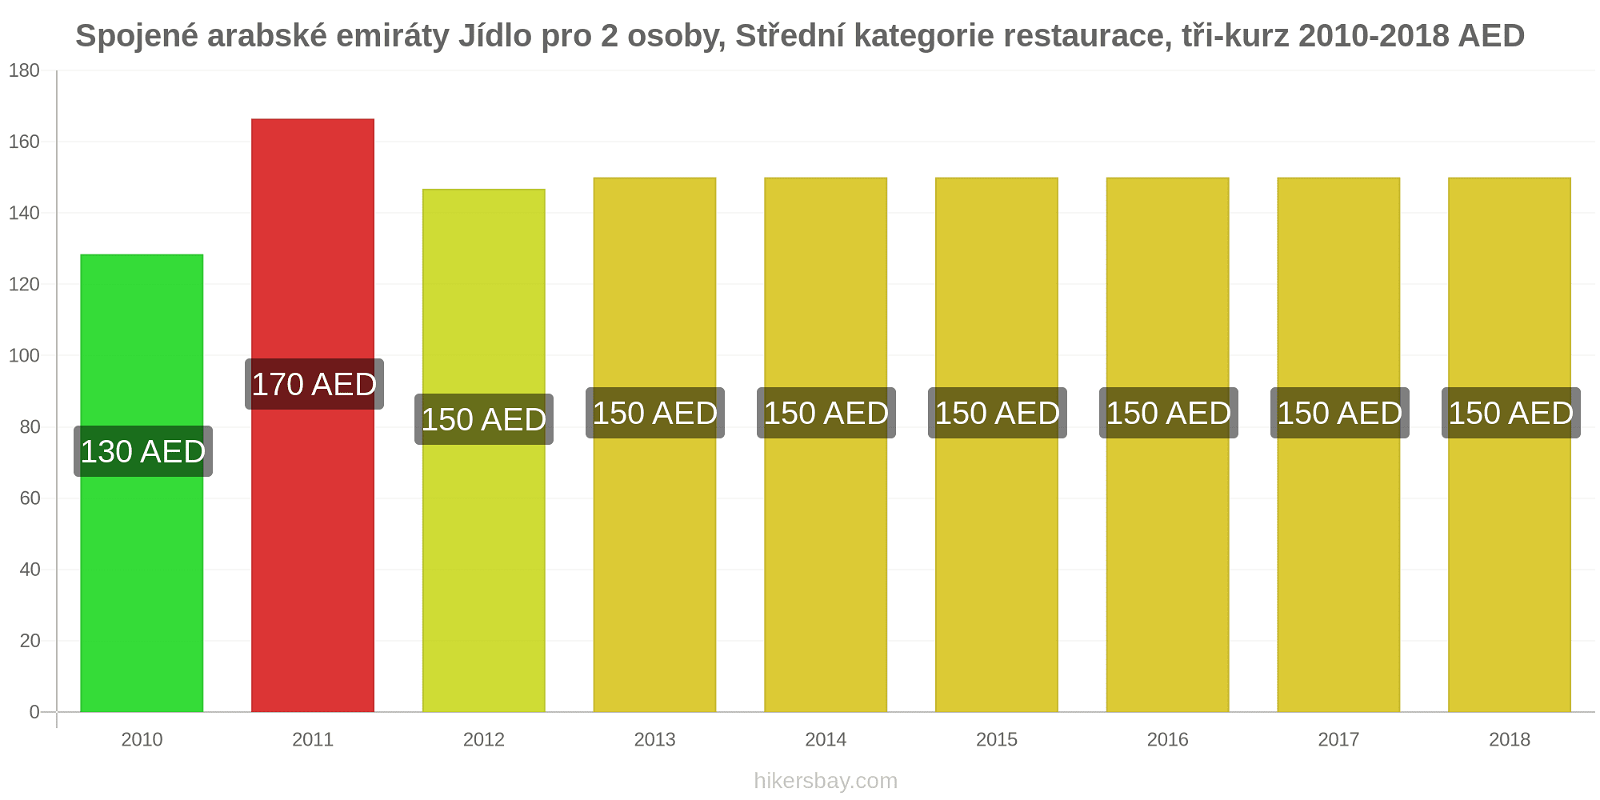 Spojené arabské emiráty změny cen Jídlo pro 2 osoby, restaurace střední třídy, tři chody hikersbay.com